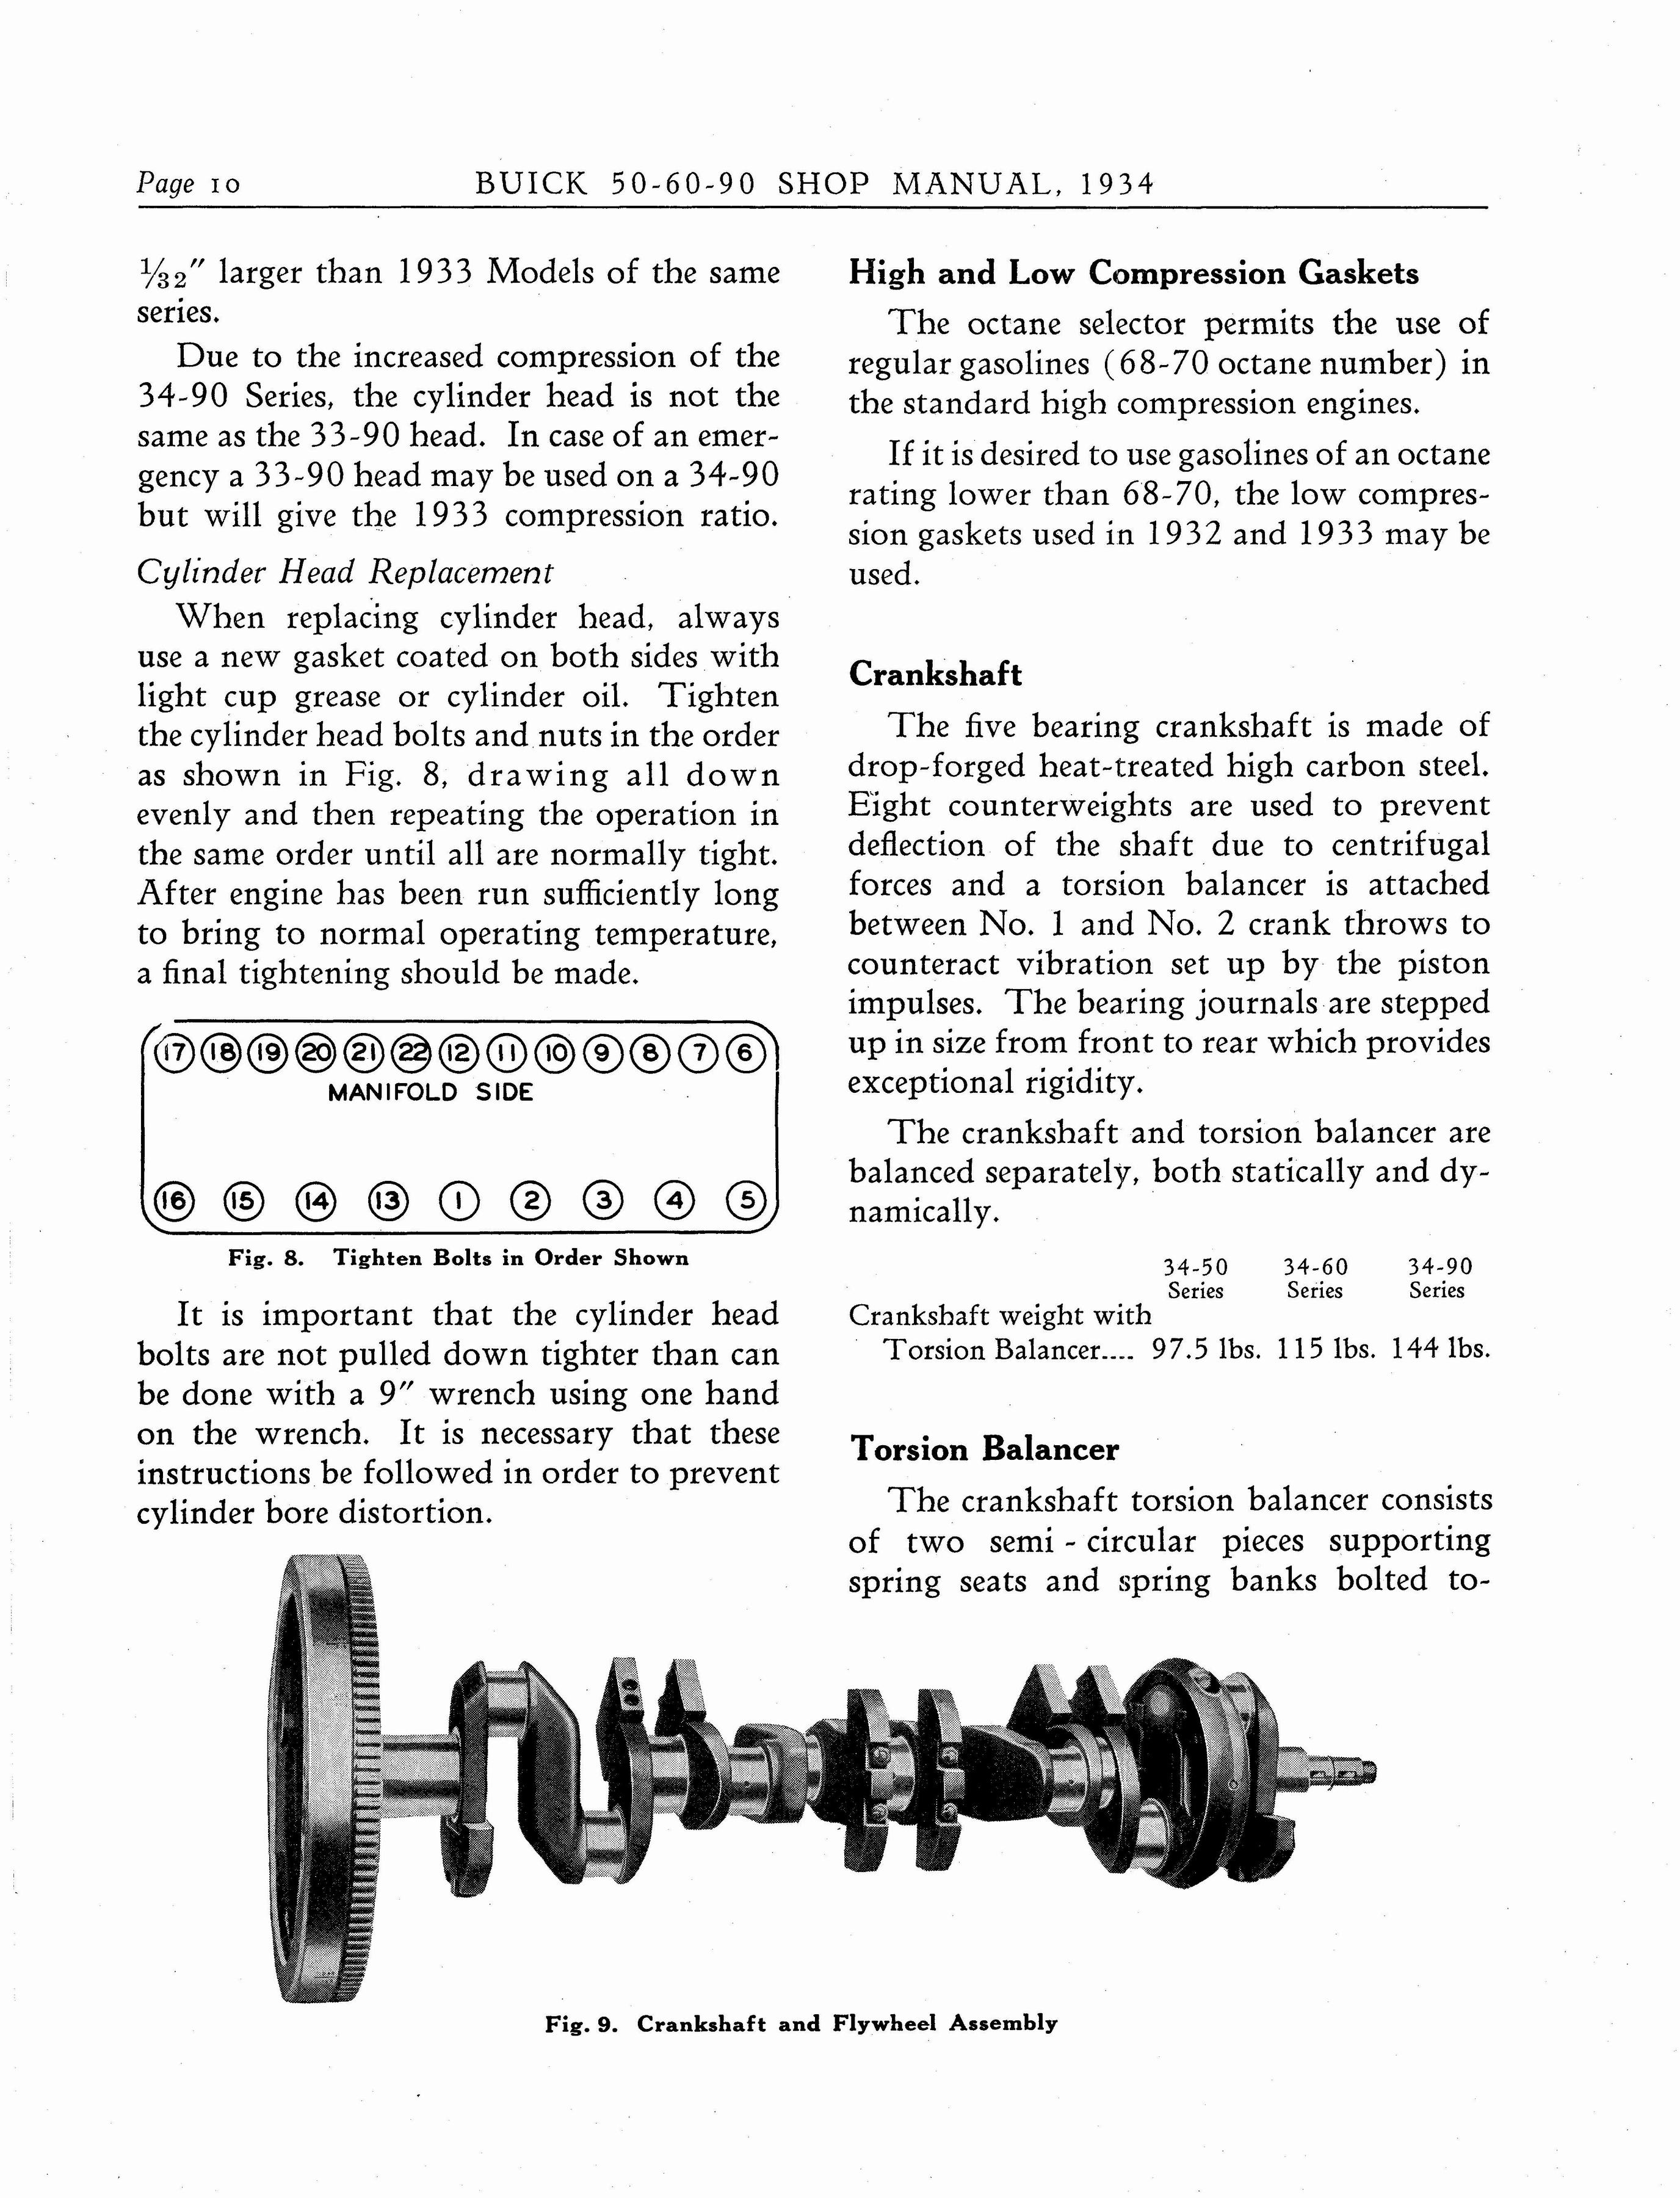 n_1934 Buick Series 50-60-90 Shop Manual_Page_011.jpg